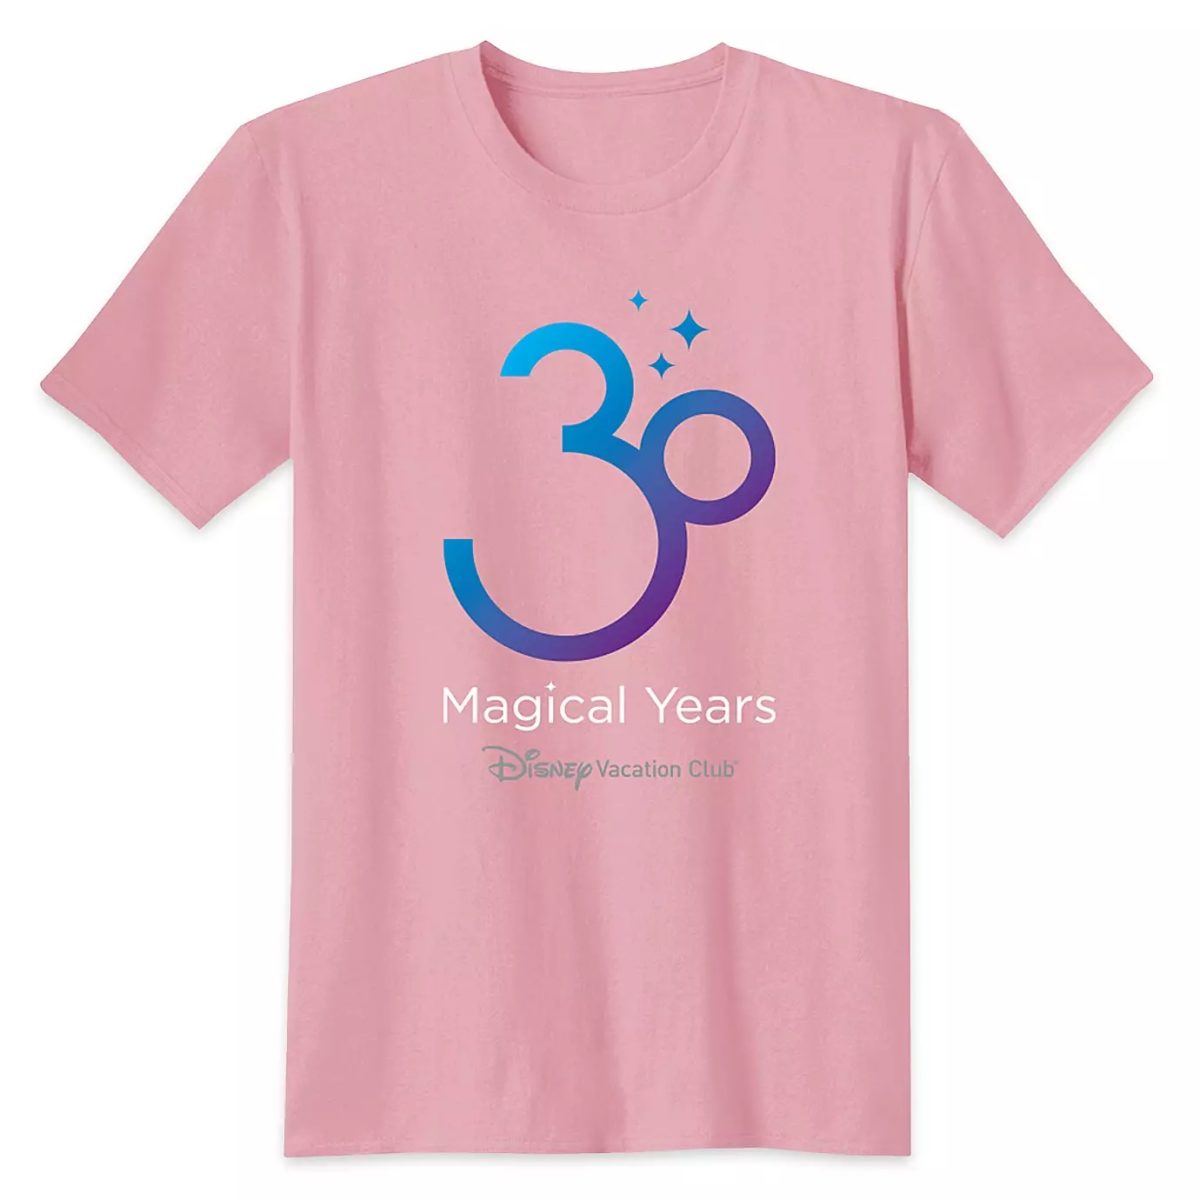 dvc-30th-anniversary-t-shirt-pink-3732582